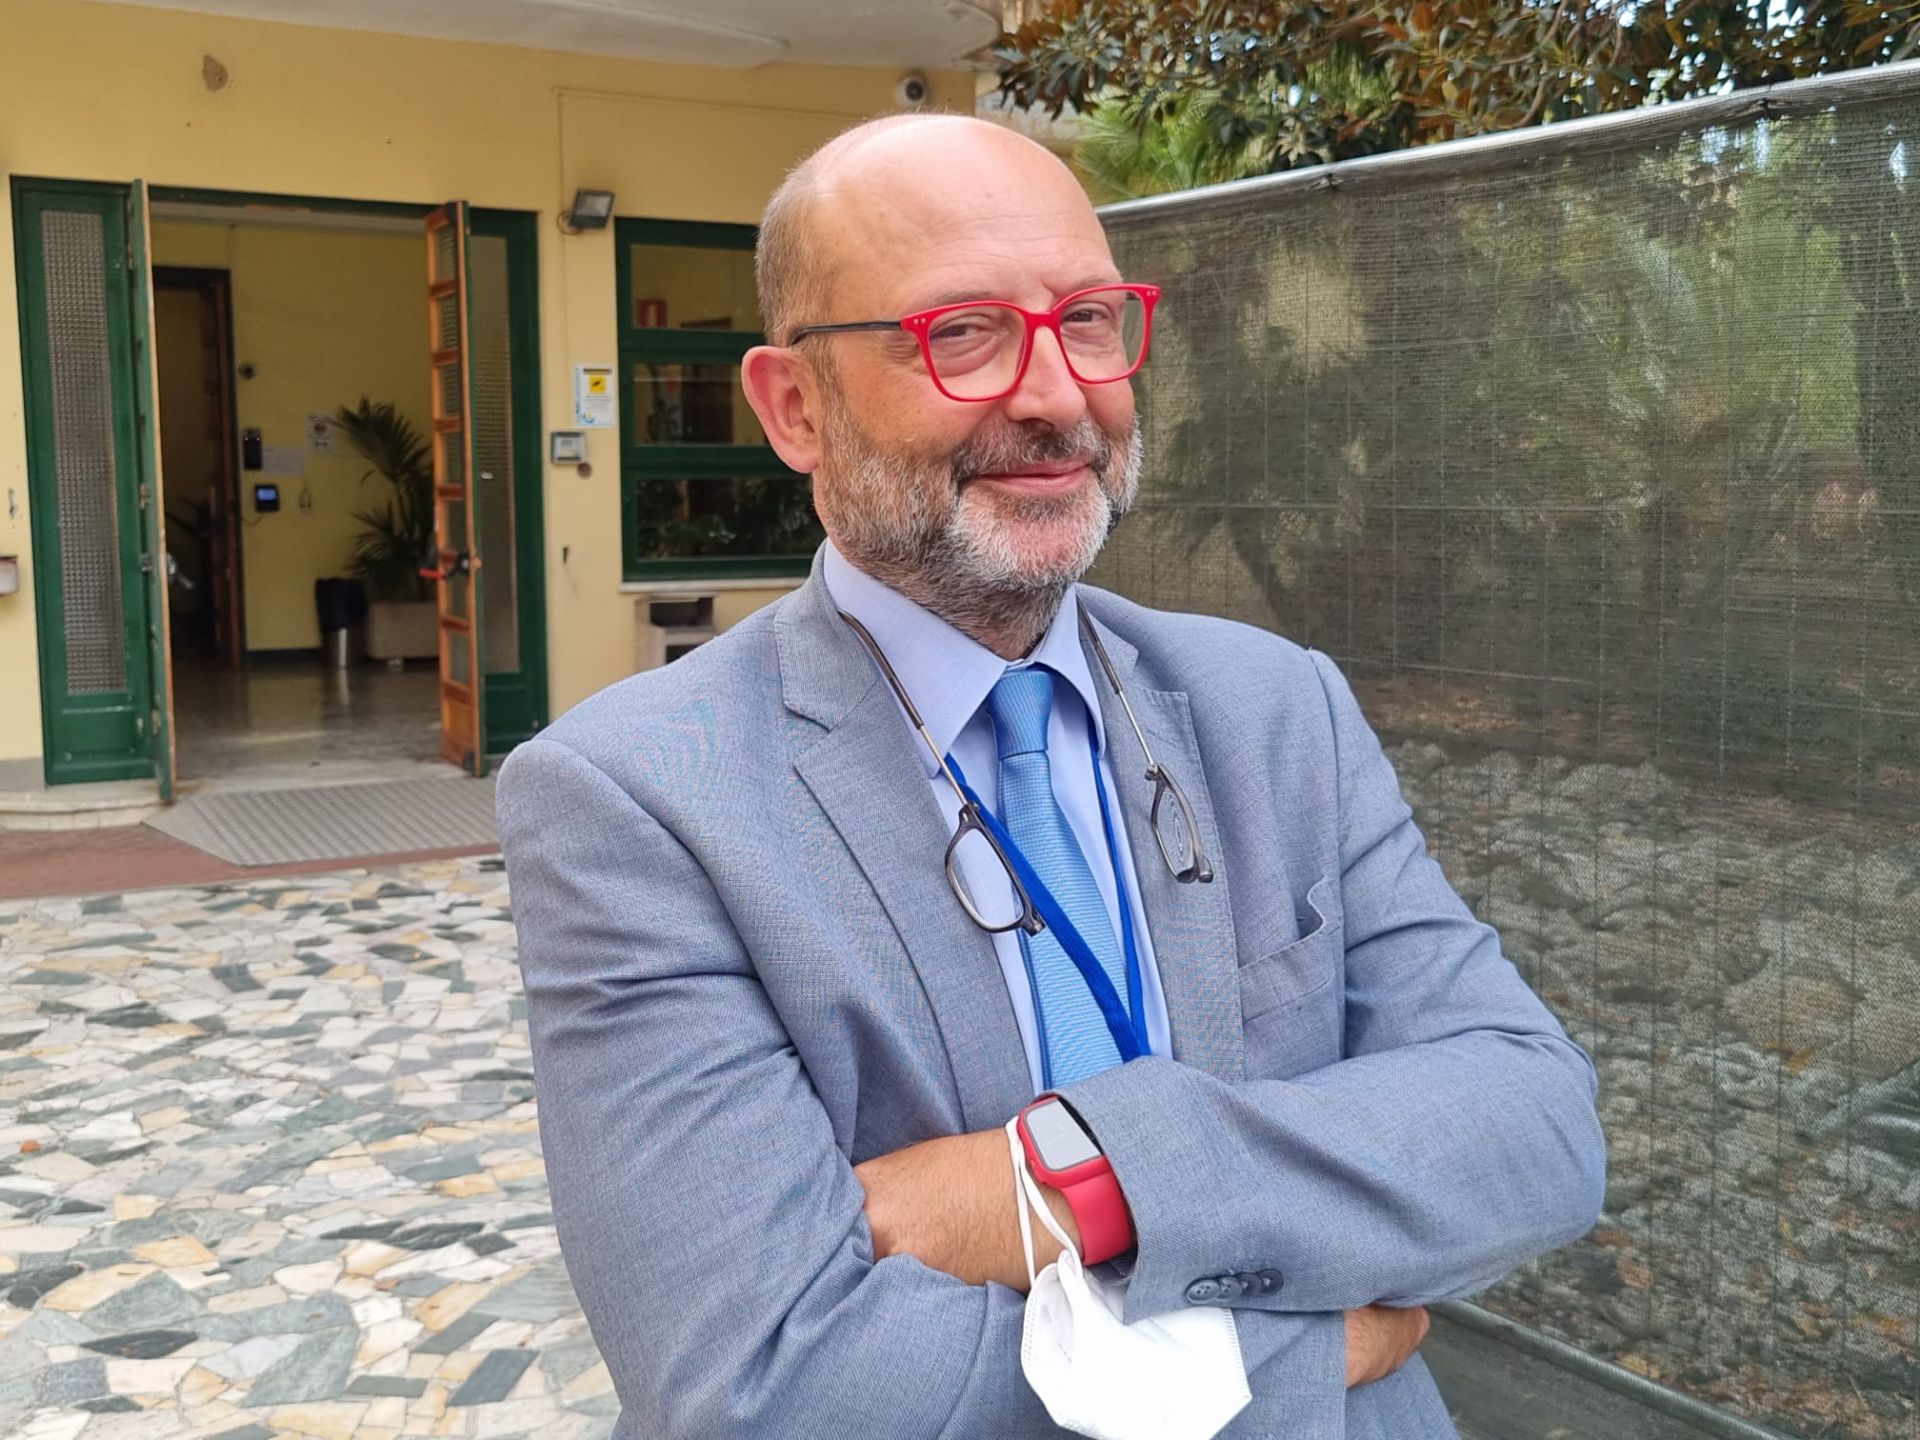 Luca Stucchi nuovo direttore generale Asl1: "potenziare l'attrattività per portare più medici"